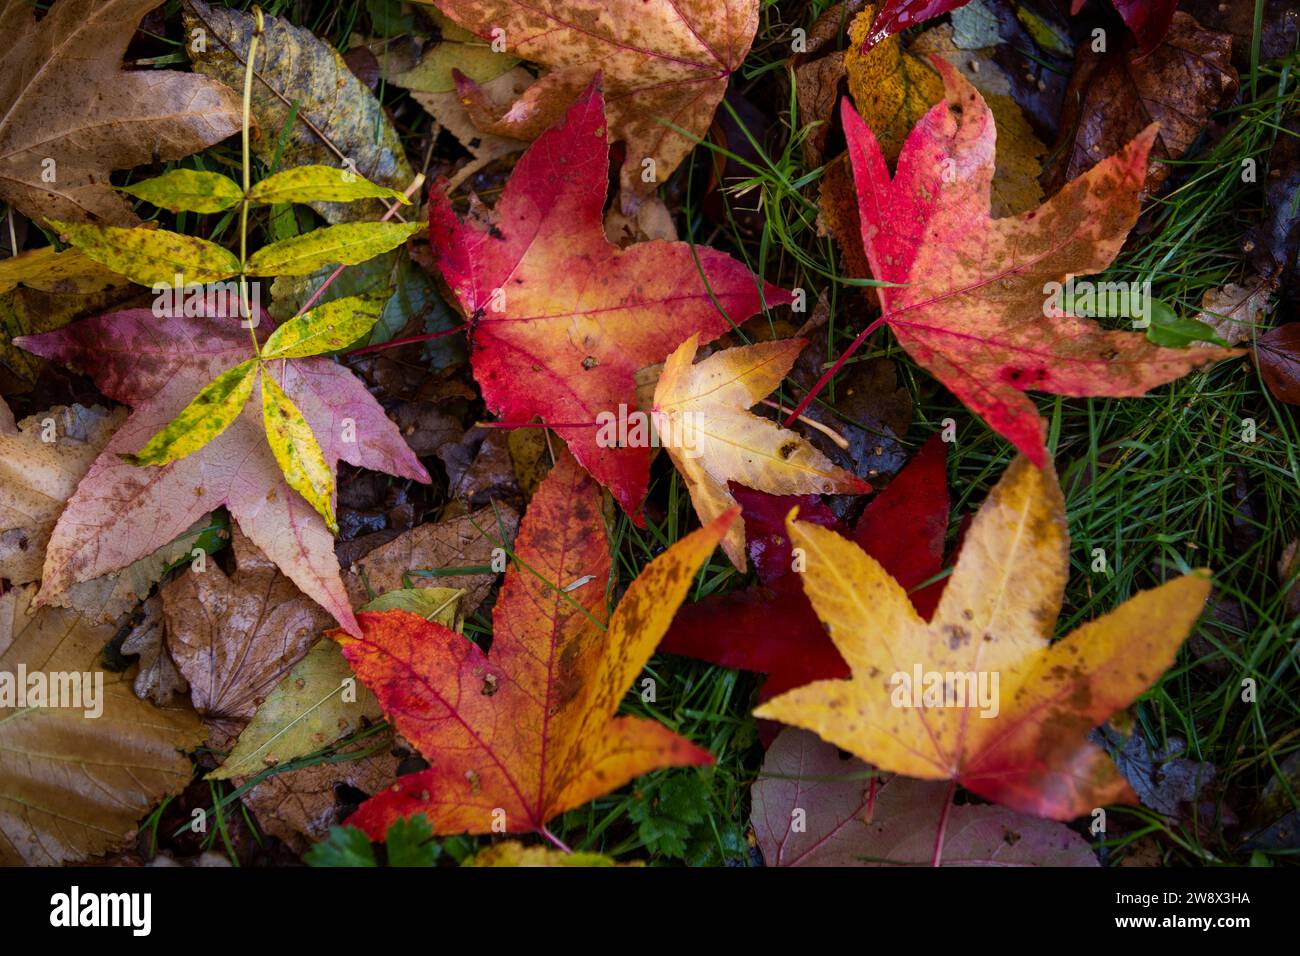 Regno Unito, Inghilterra, Cheshire, Goodrey, Università di Manchester, Jodrell Bank Arboretum in autunno, foglie colorate sulla terra Foto Stock